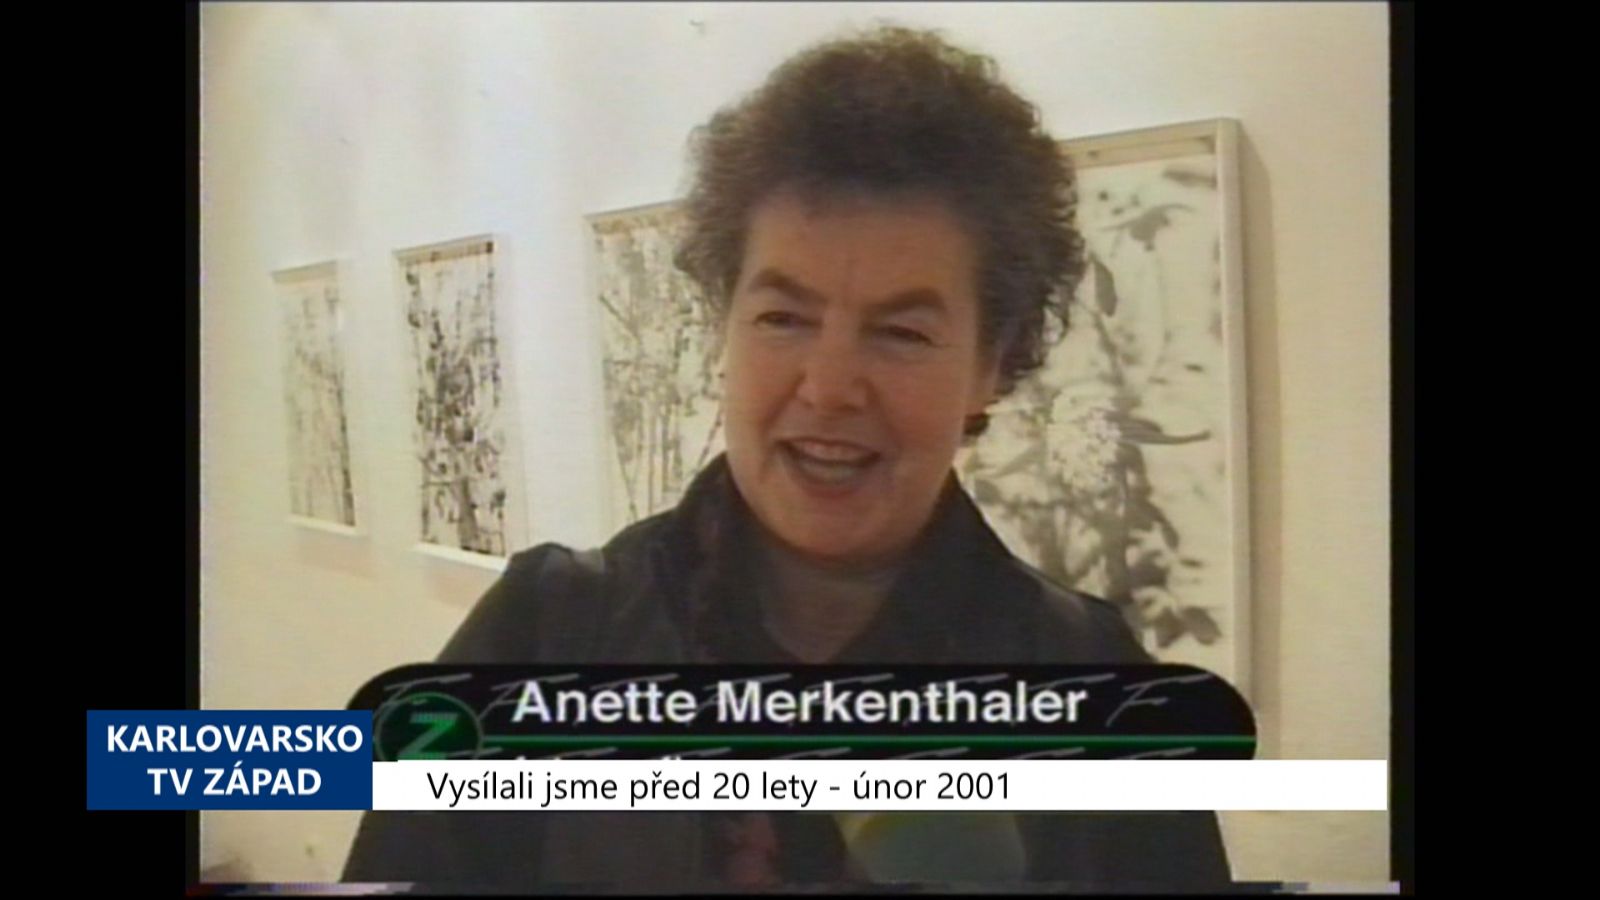 2001 – Cheb: V Galerii G4 vystavuje Anette Merkenthaler (TV Západ)